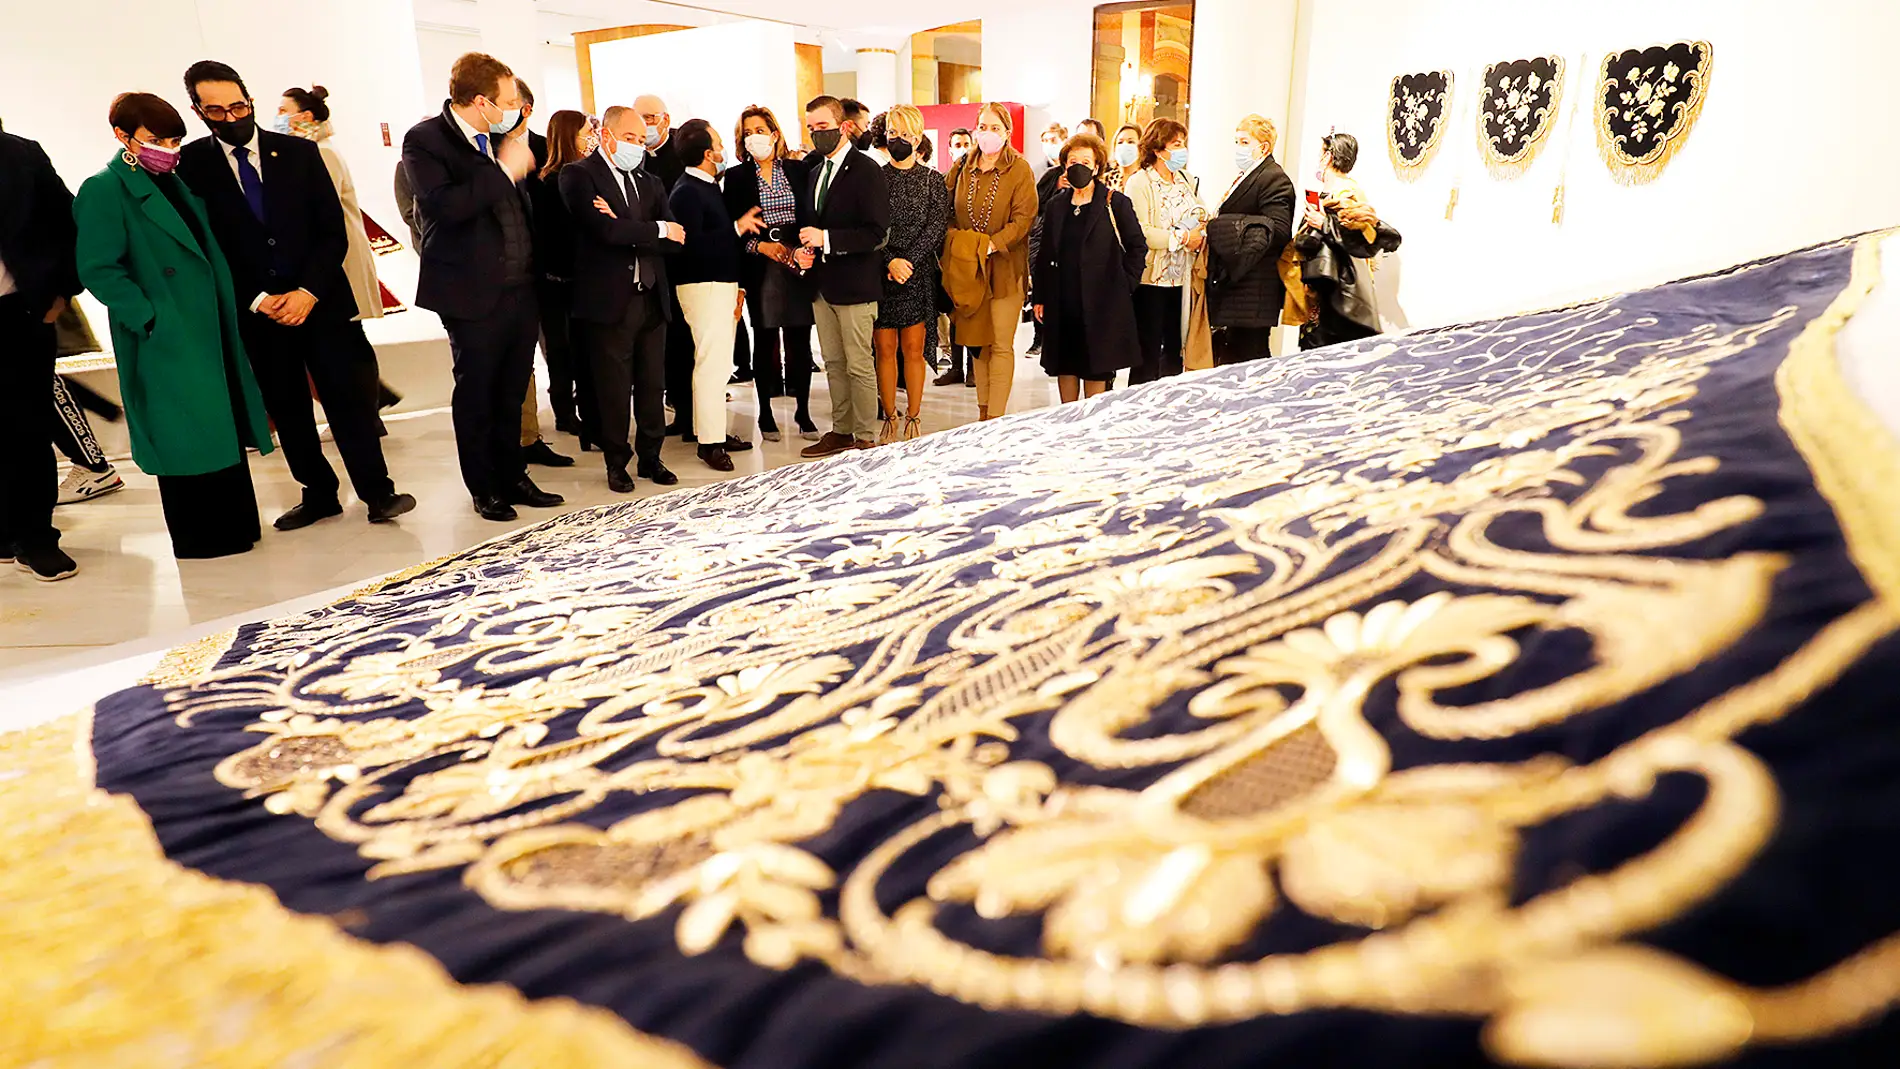 El patrimonio textil cofrade protagonista de la exposición “Maiestas” en el Museo Municipal